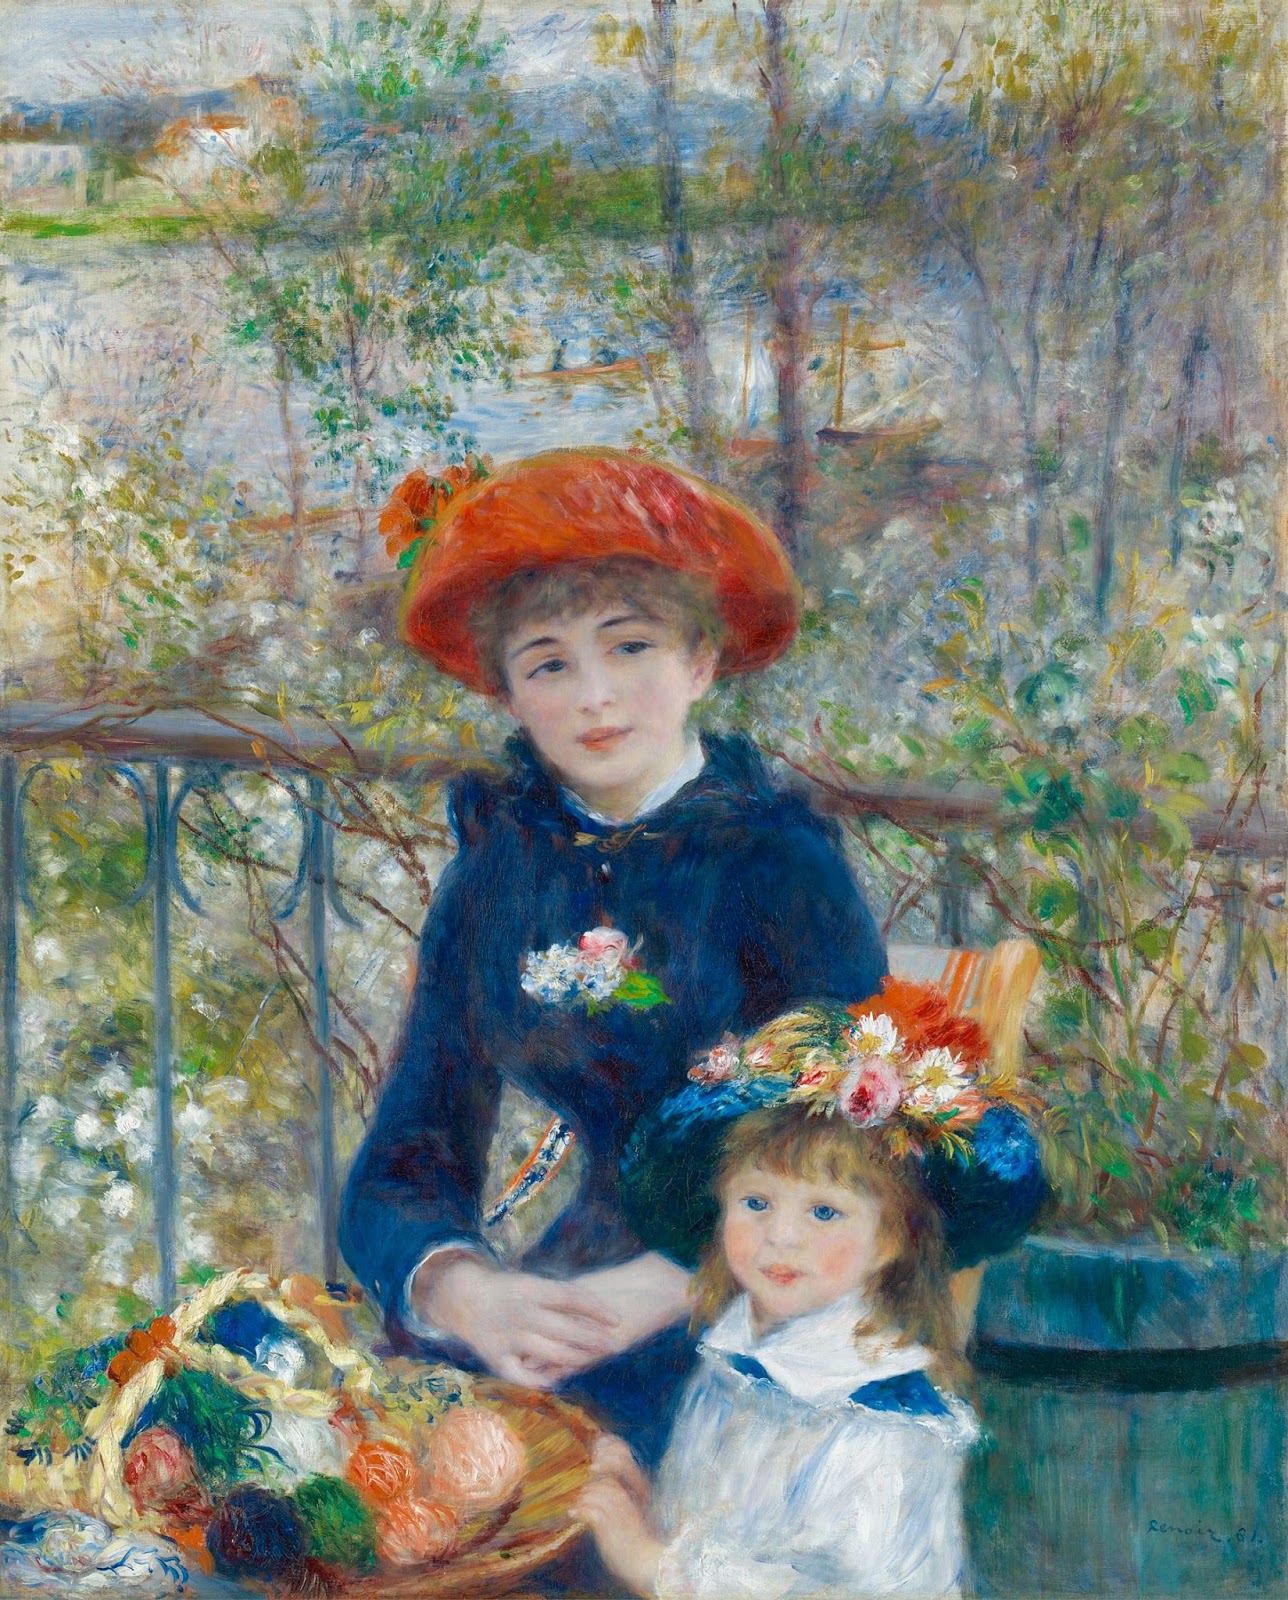 Pierre+Auguste+Renoir-1841-1-19 (749).jpg